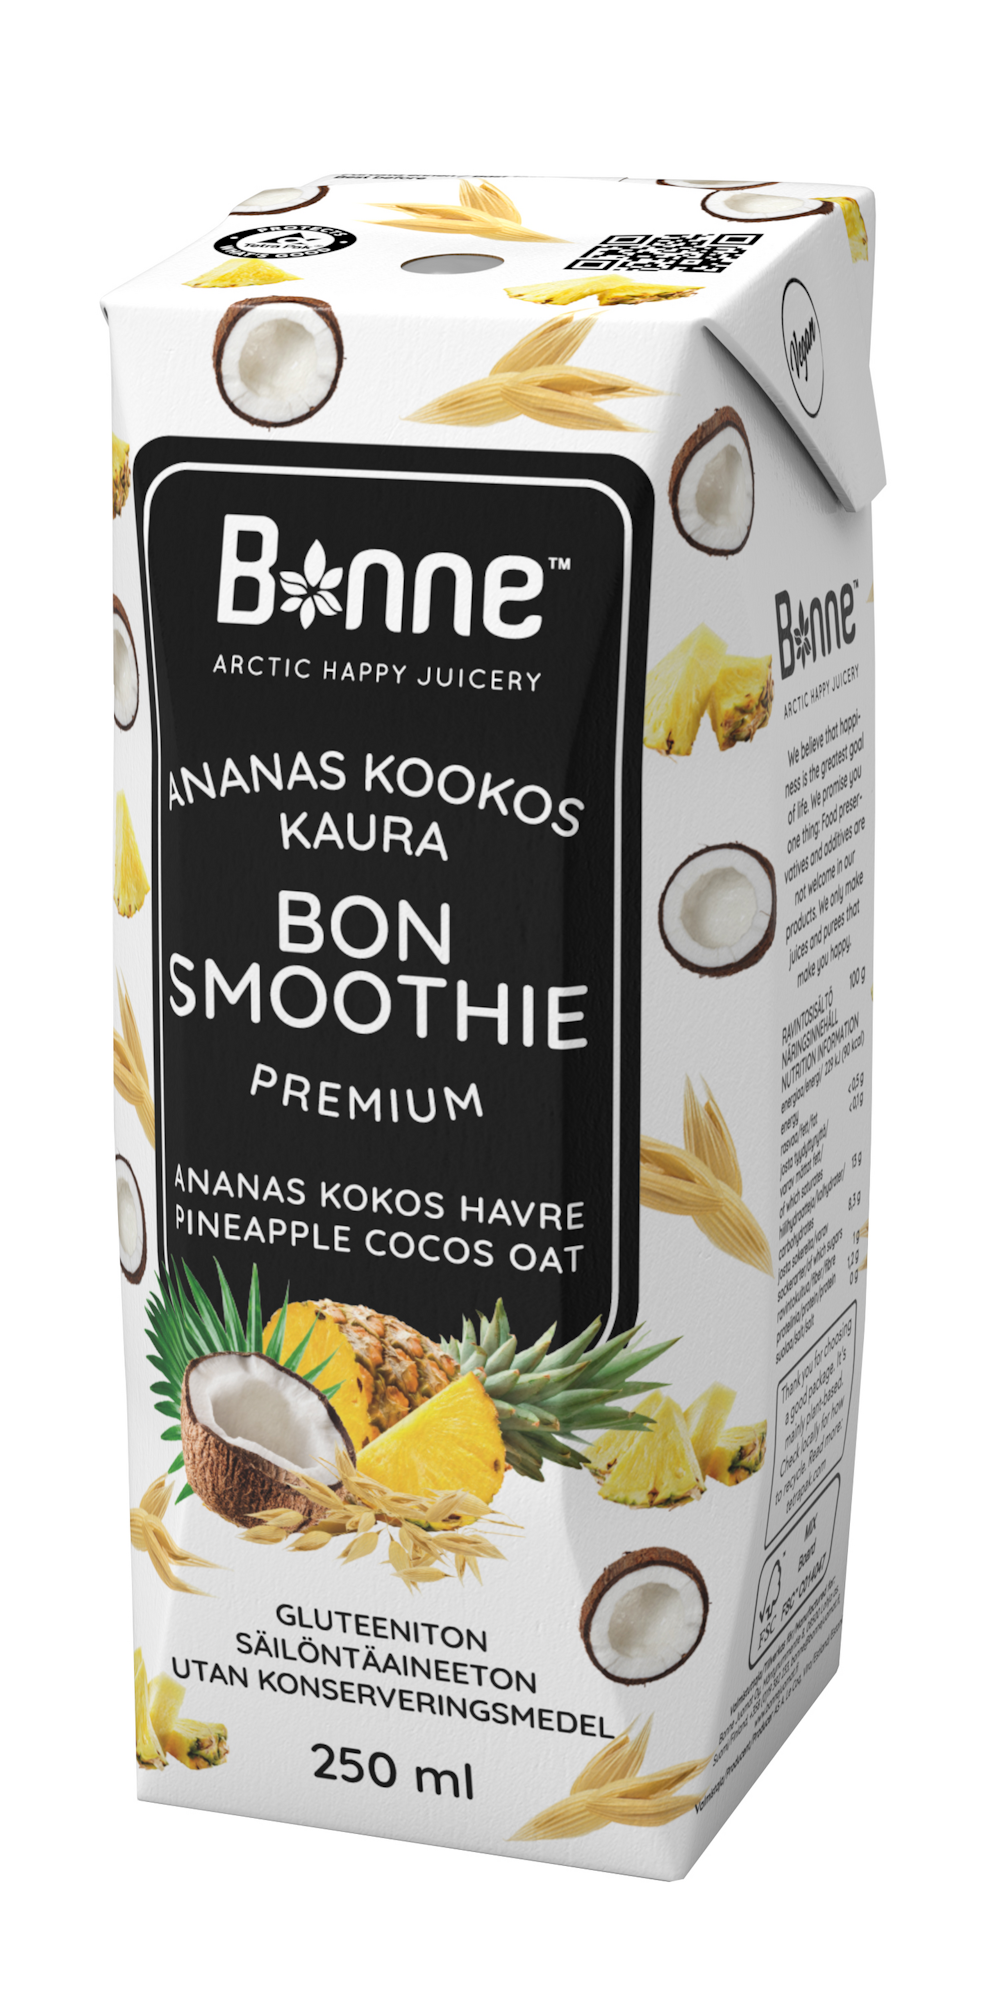 BonSmoothie ananas-kookos-kaura 250ml smoothie — HoReCa-tukku Kespro